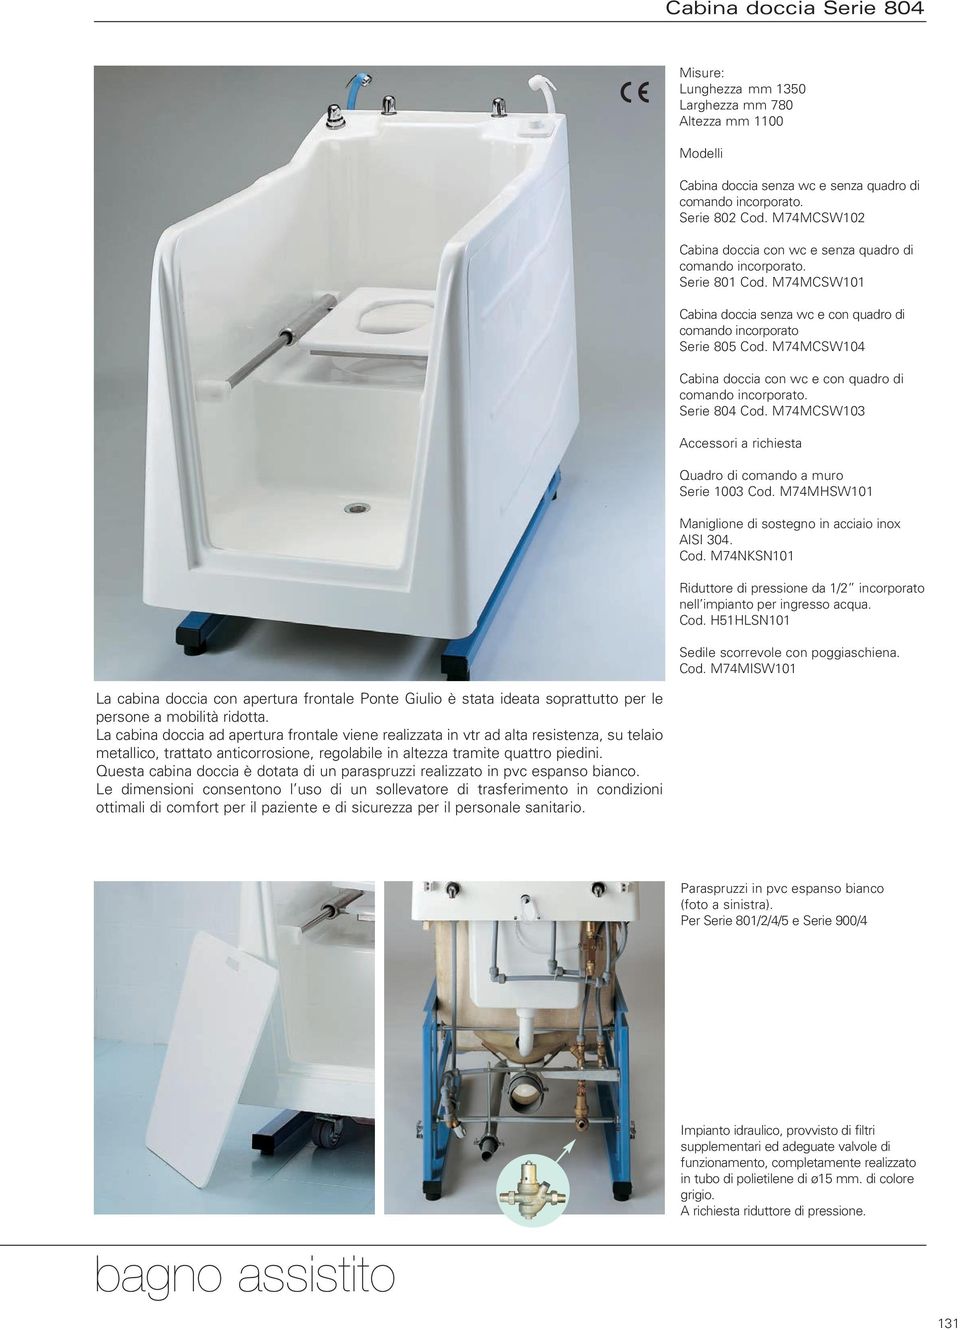 Questa cabina doccia è dotata di un paraspruzzi realizzato in pvc espanso bianco.